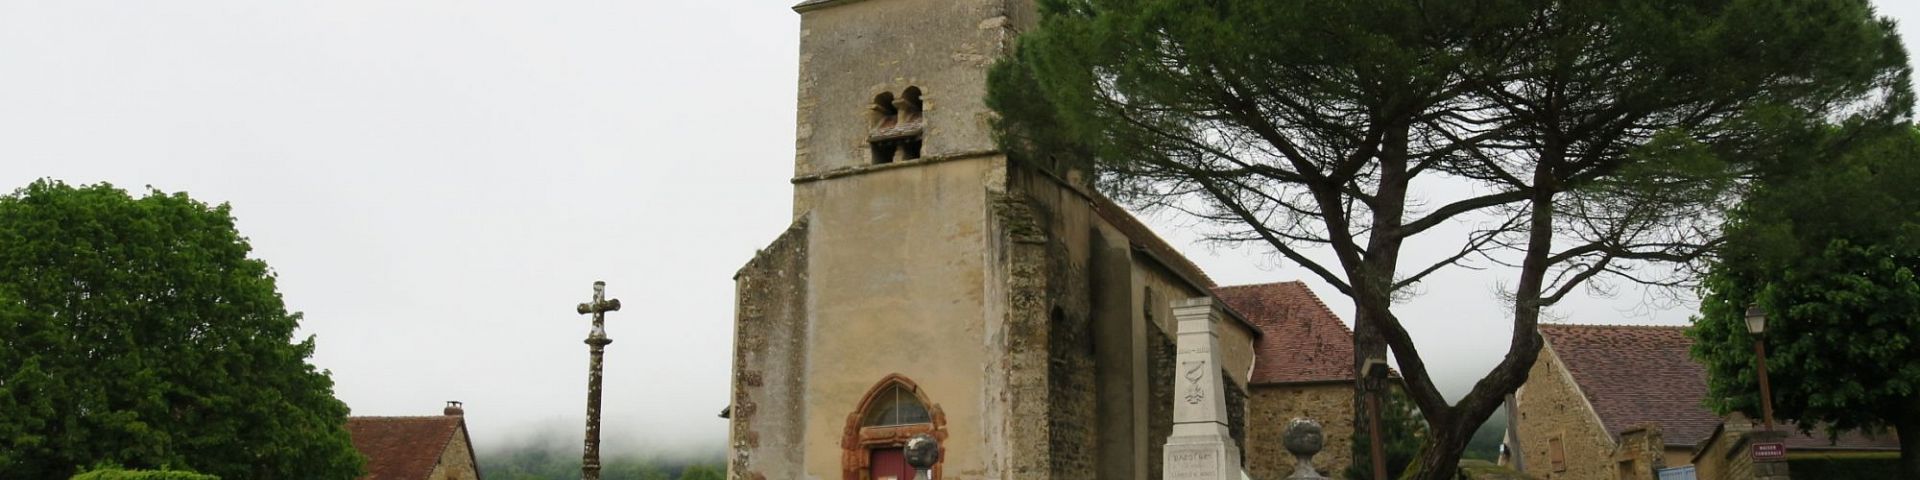 Bazoches - Eglise St-Hilaire (58)